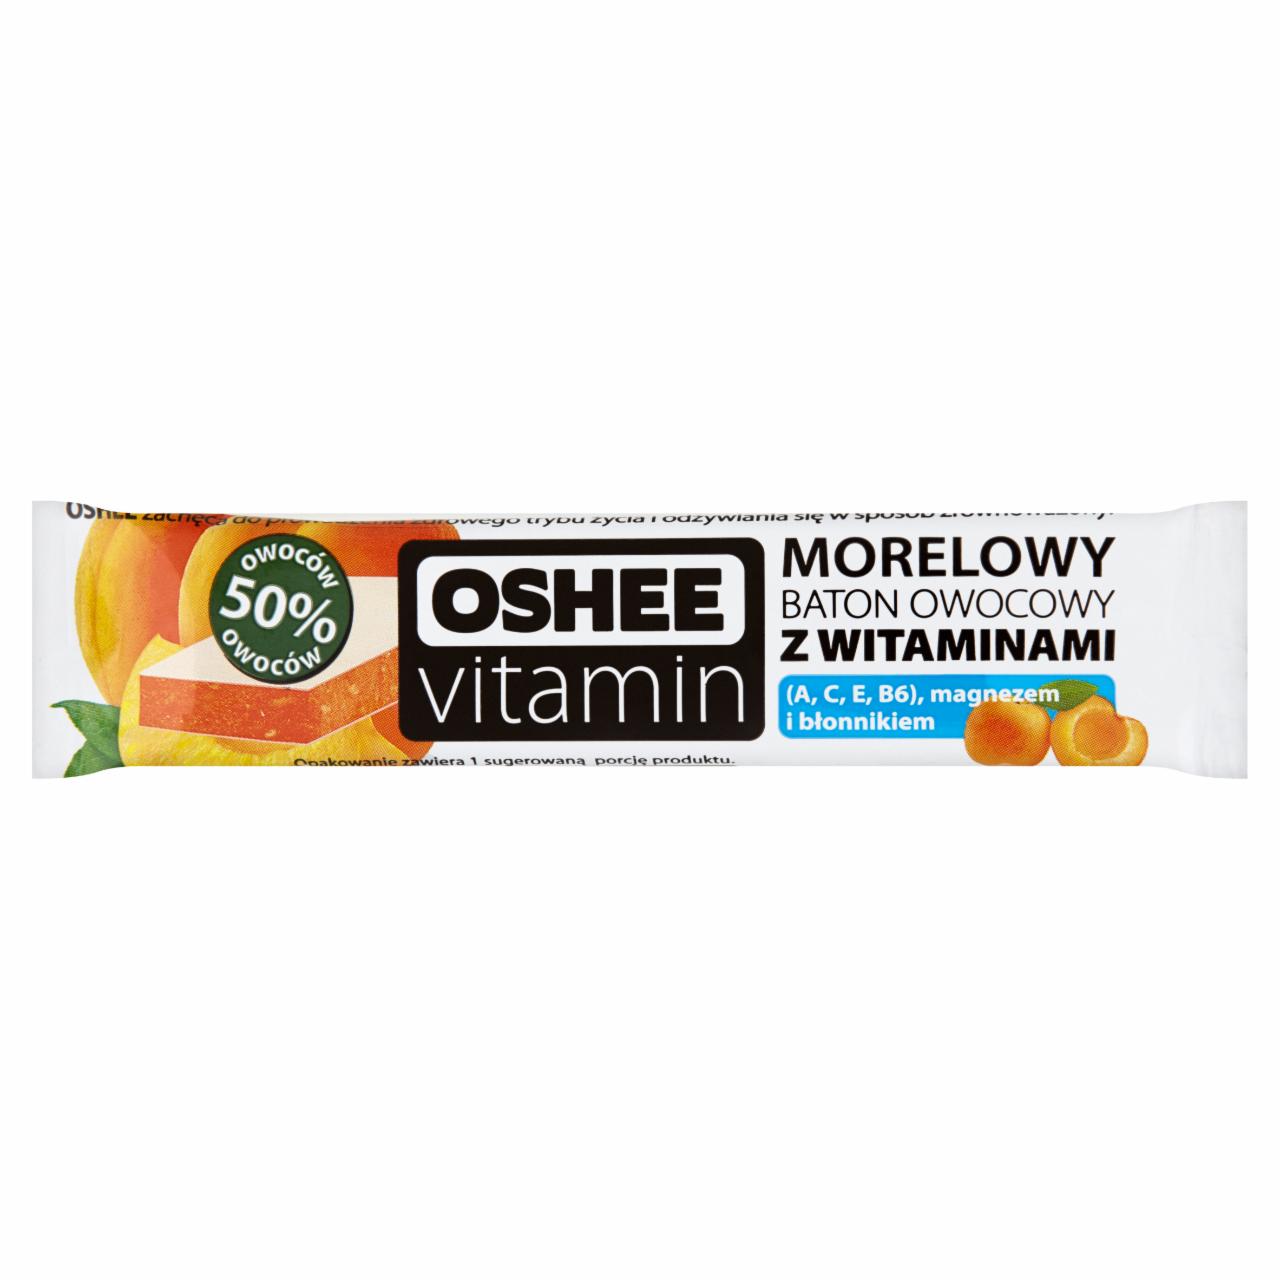 Zdjęcia - Oshee Vitamin Morelowy baton owocowy z witaminami 23 g